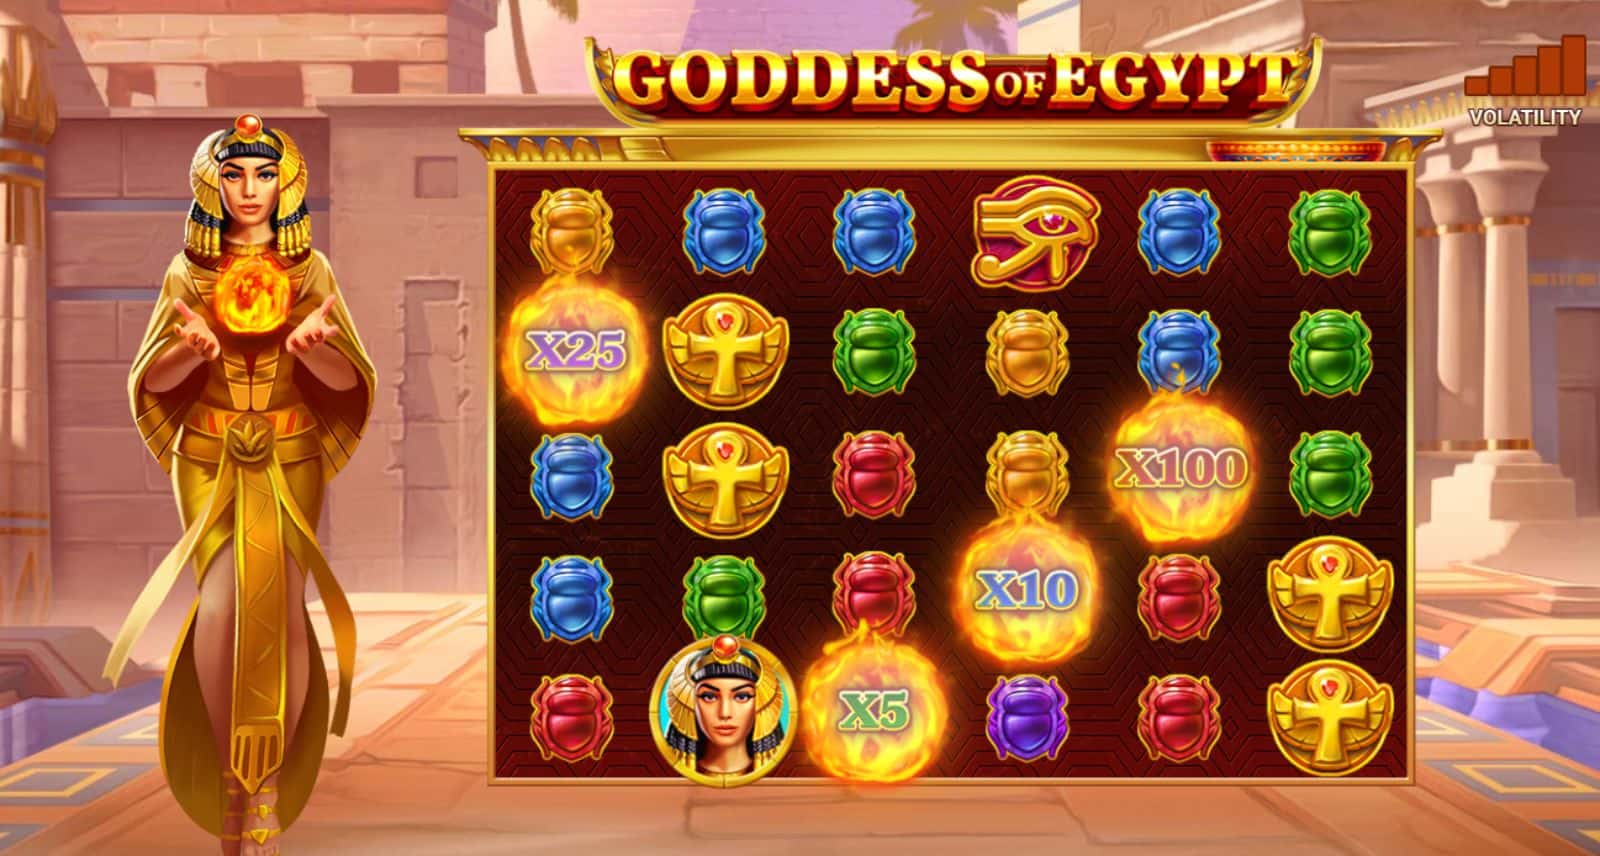 New Slots – Coins, Pots, a Goddess and a Fish Eye